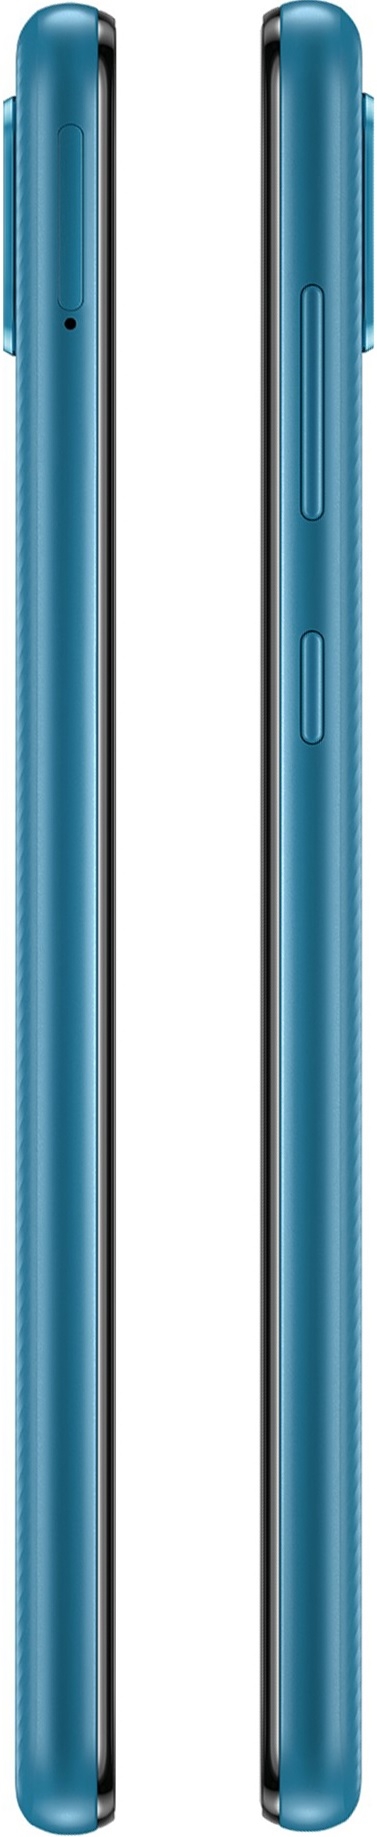 Samsung Galaxy A02 SM-A022F/DS 2/32GB